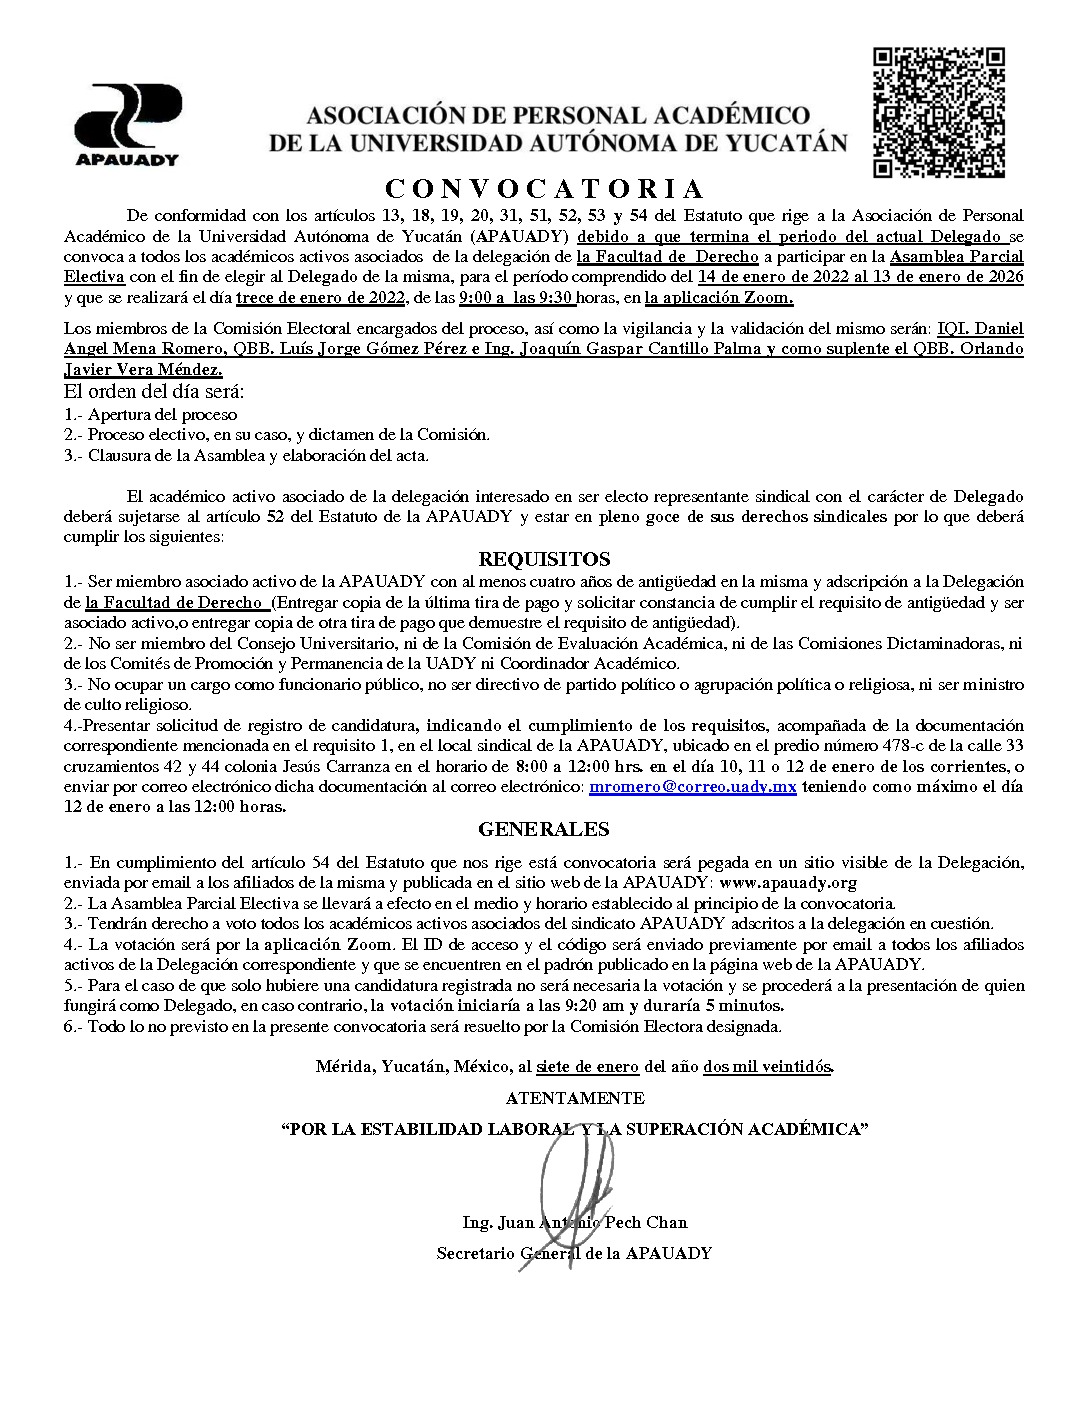 Featured image for “Convocatoria Asamblea Parcial Electiva | Delegado Facultad de Derecho| 13 enero 2022 | 9:00-9:30”